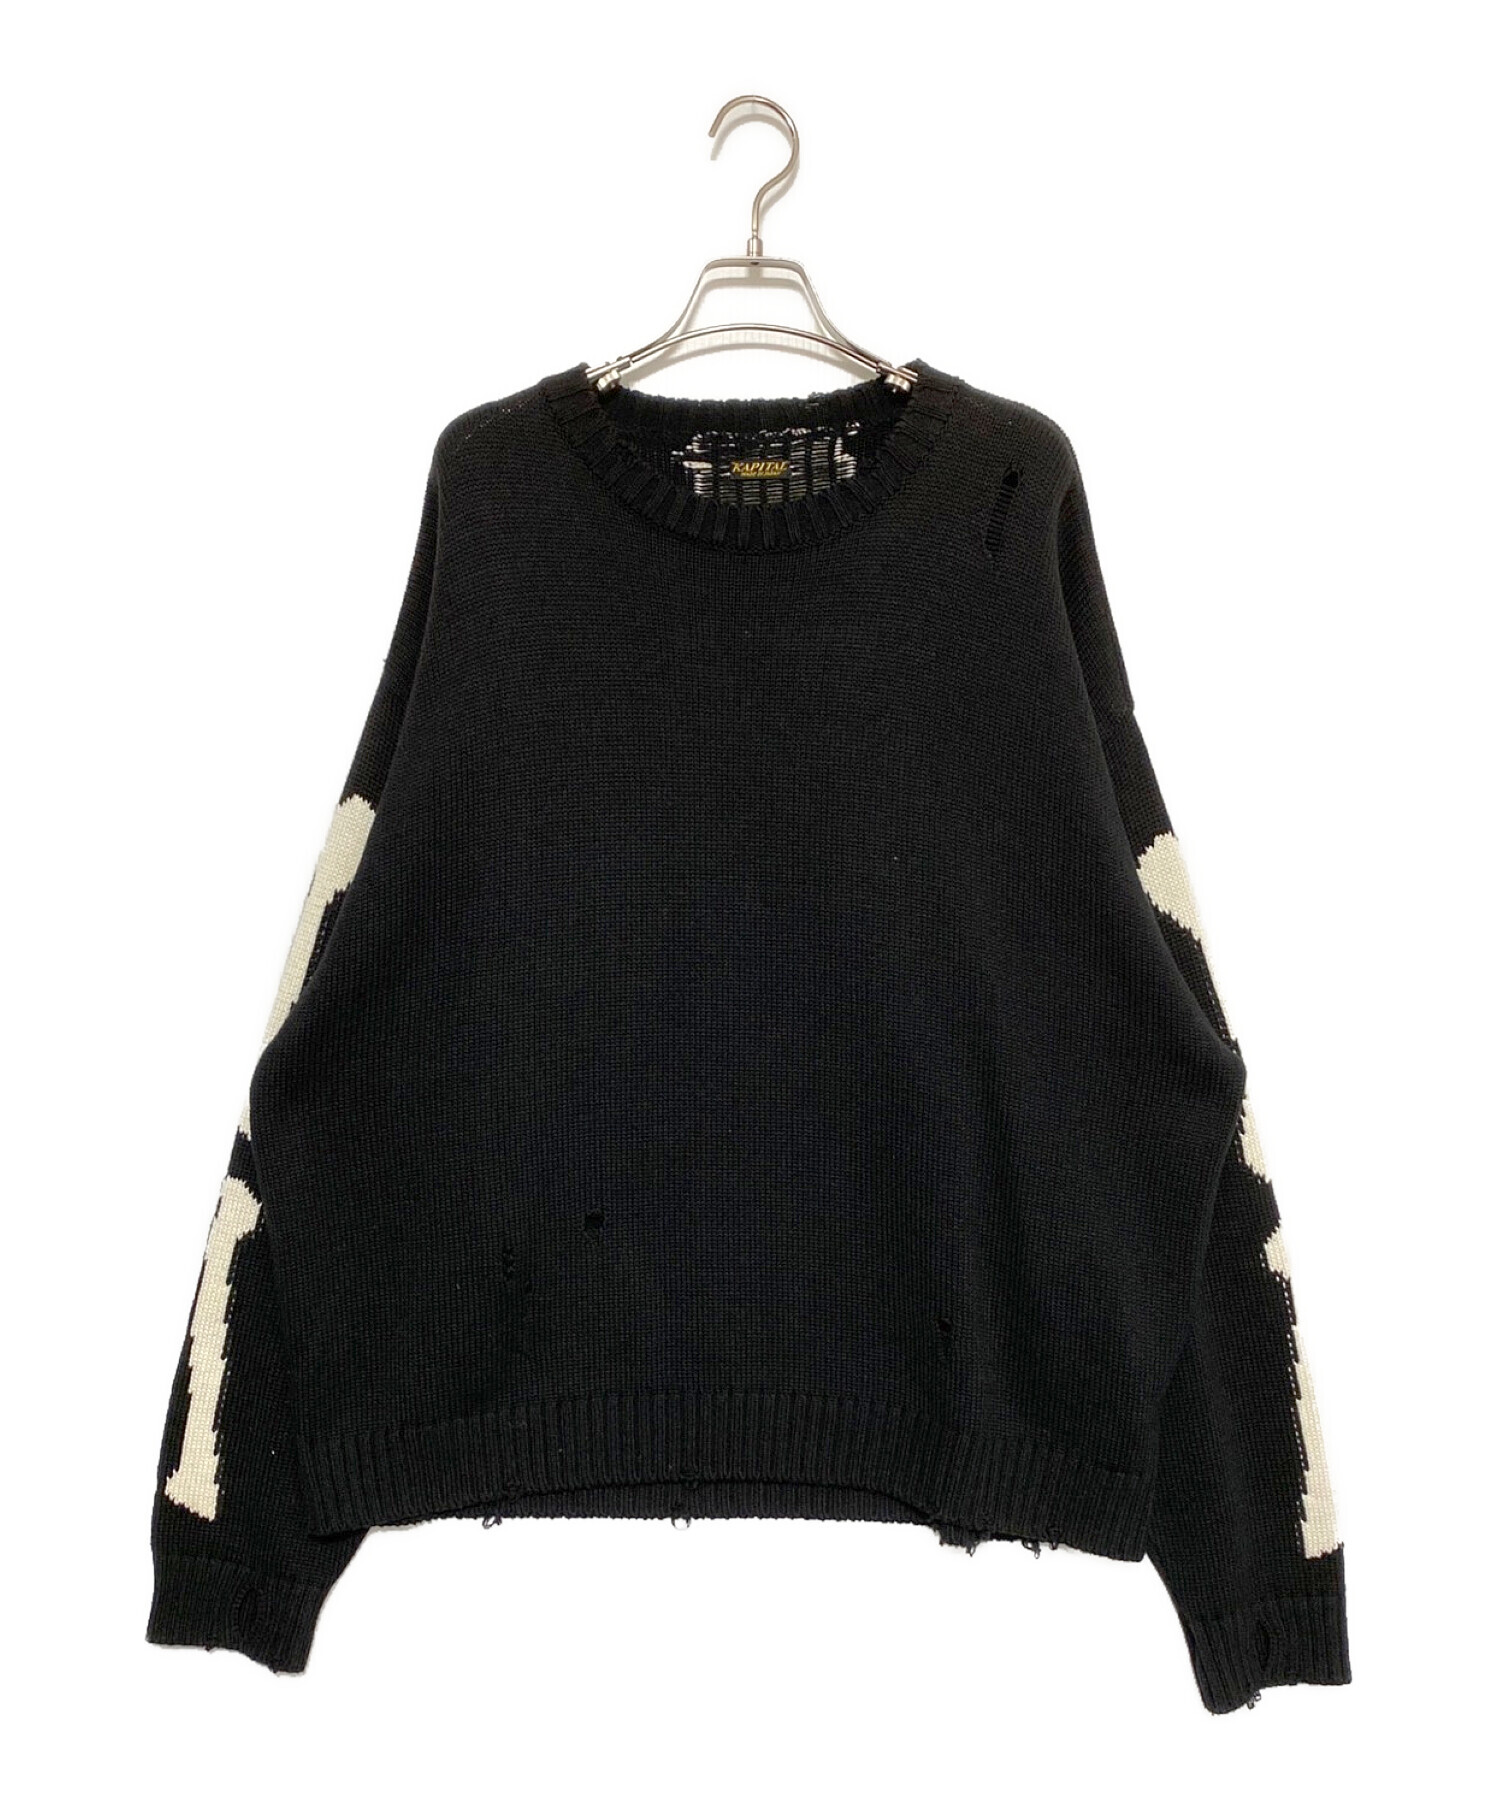 20,965円BONEクルーセーター　サイズ3 ブラック